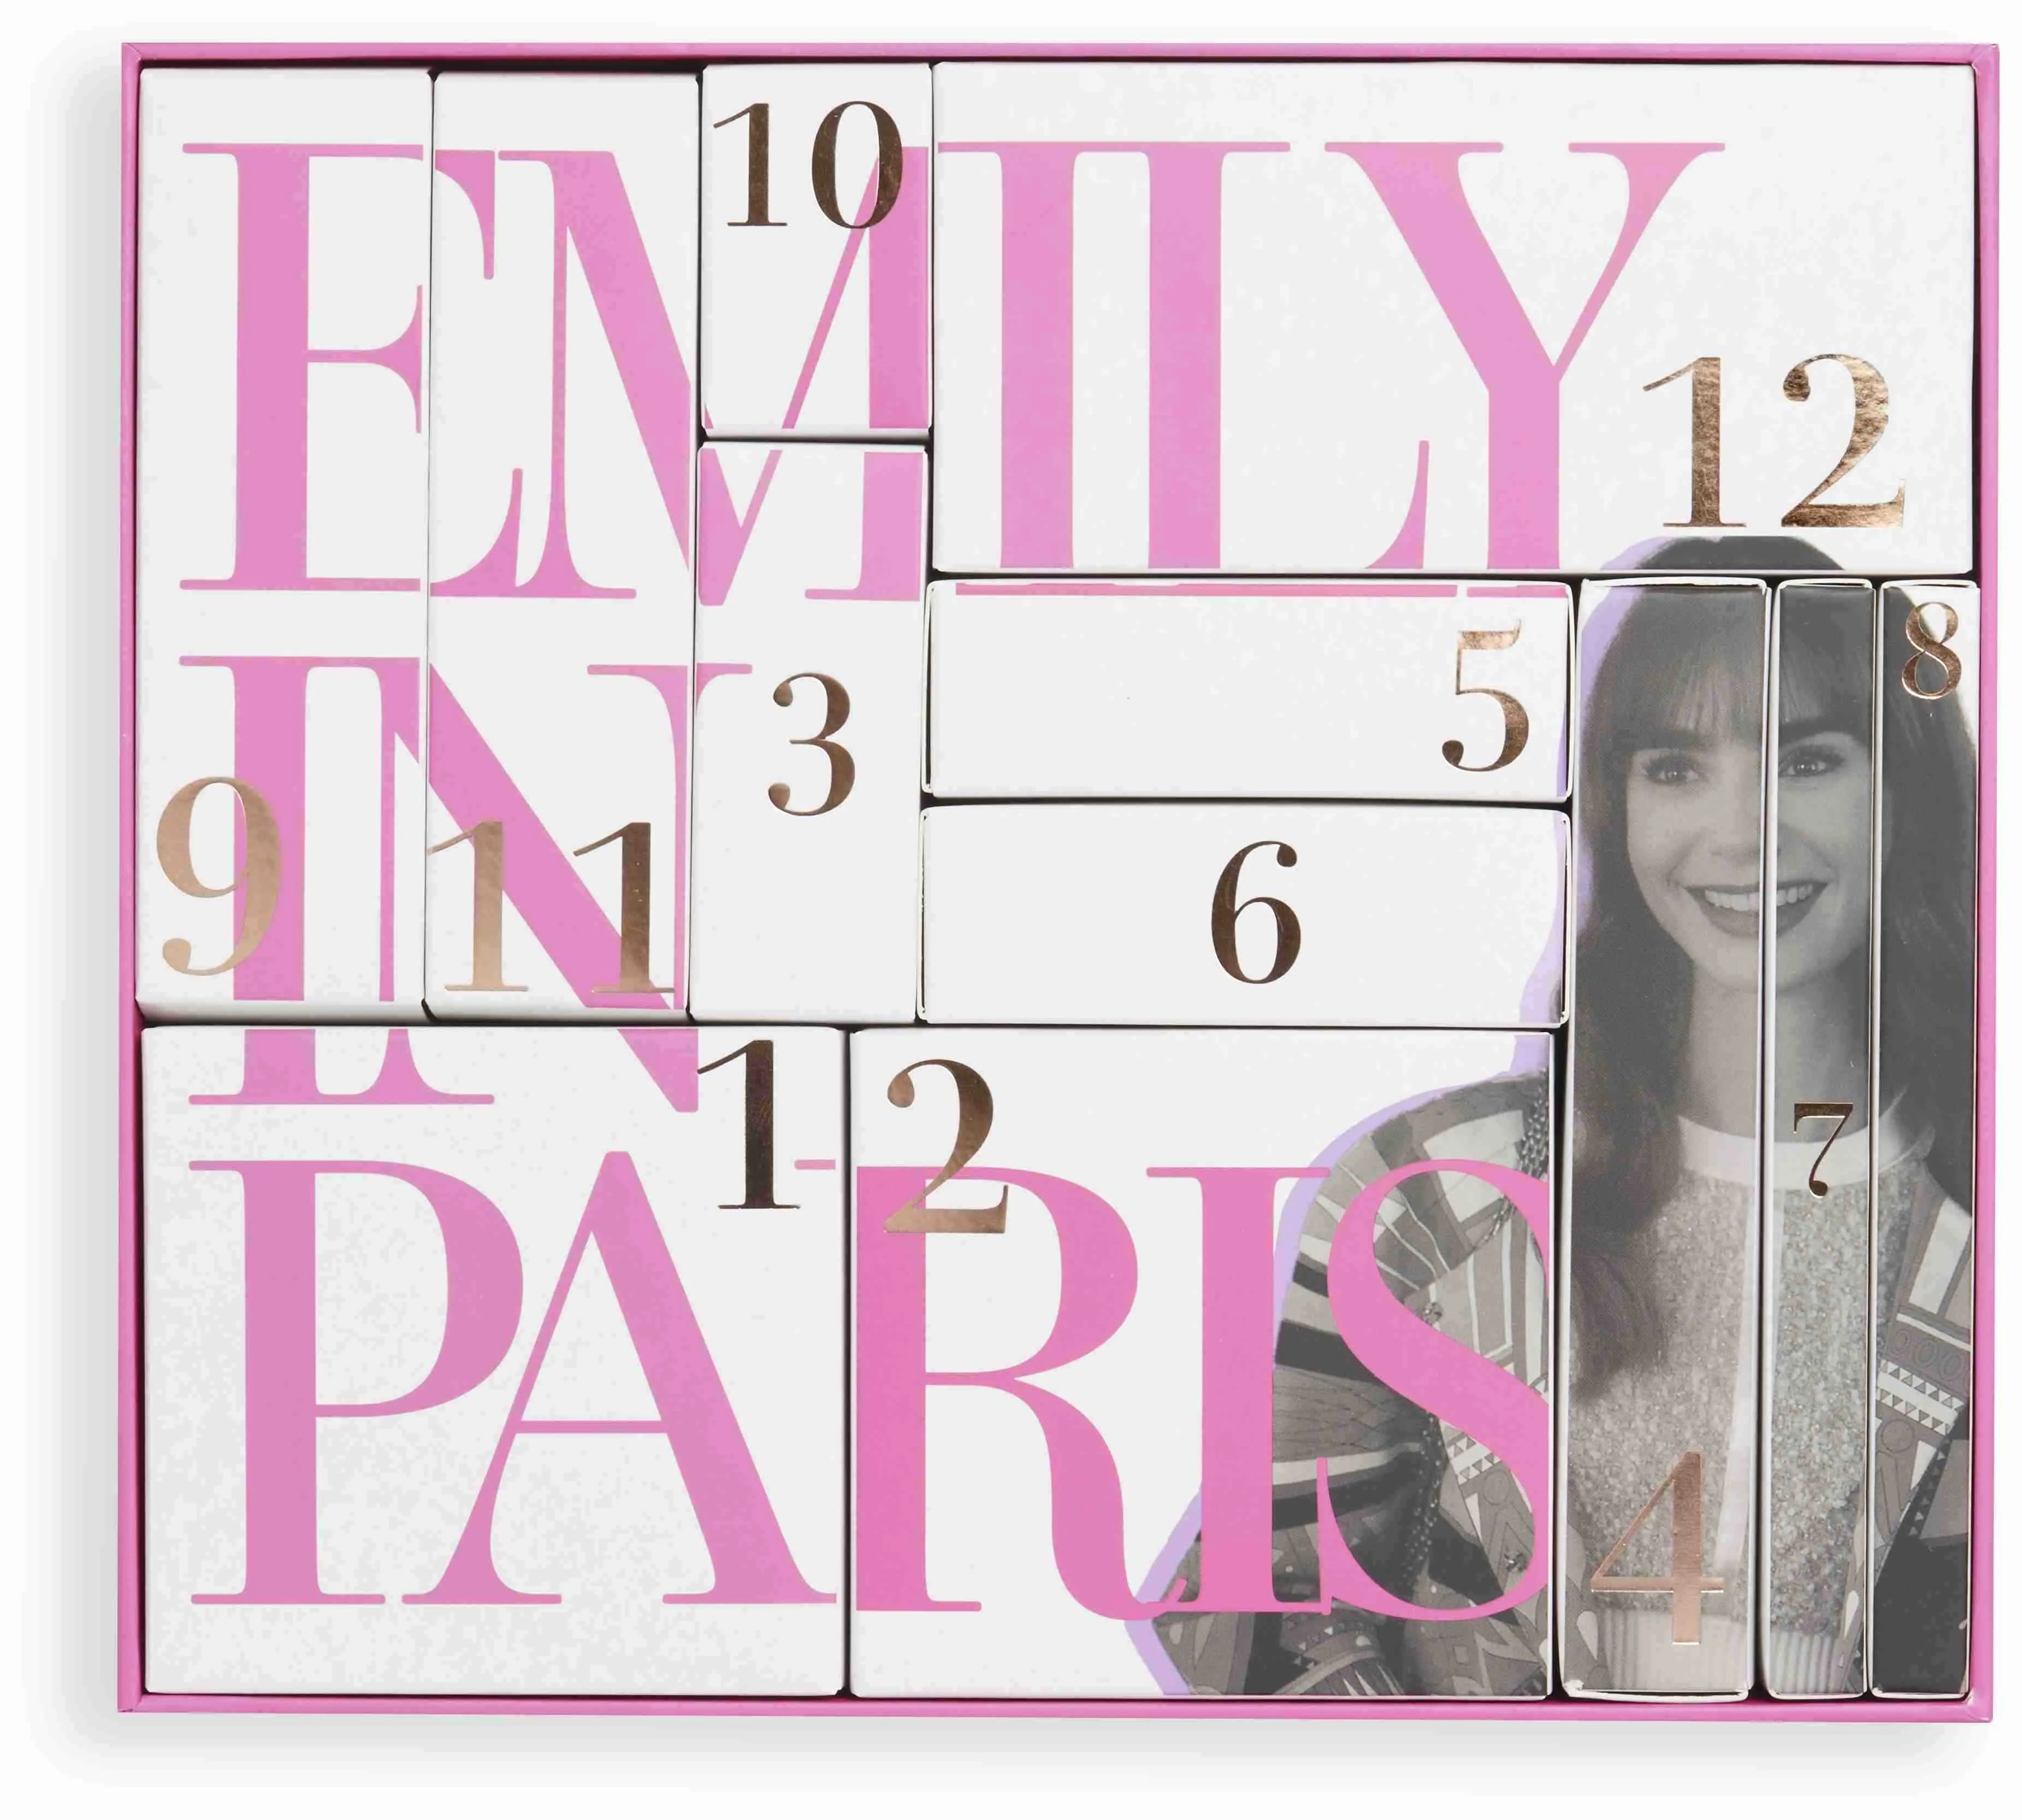 Revolution Emily in Paris 12 Days in Paris adventný kalendár 1×1 set, adventný kalendár